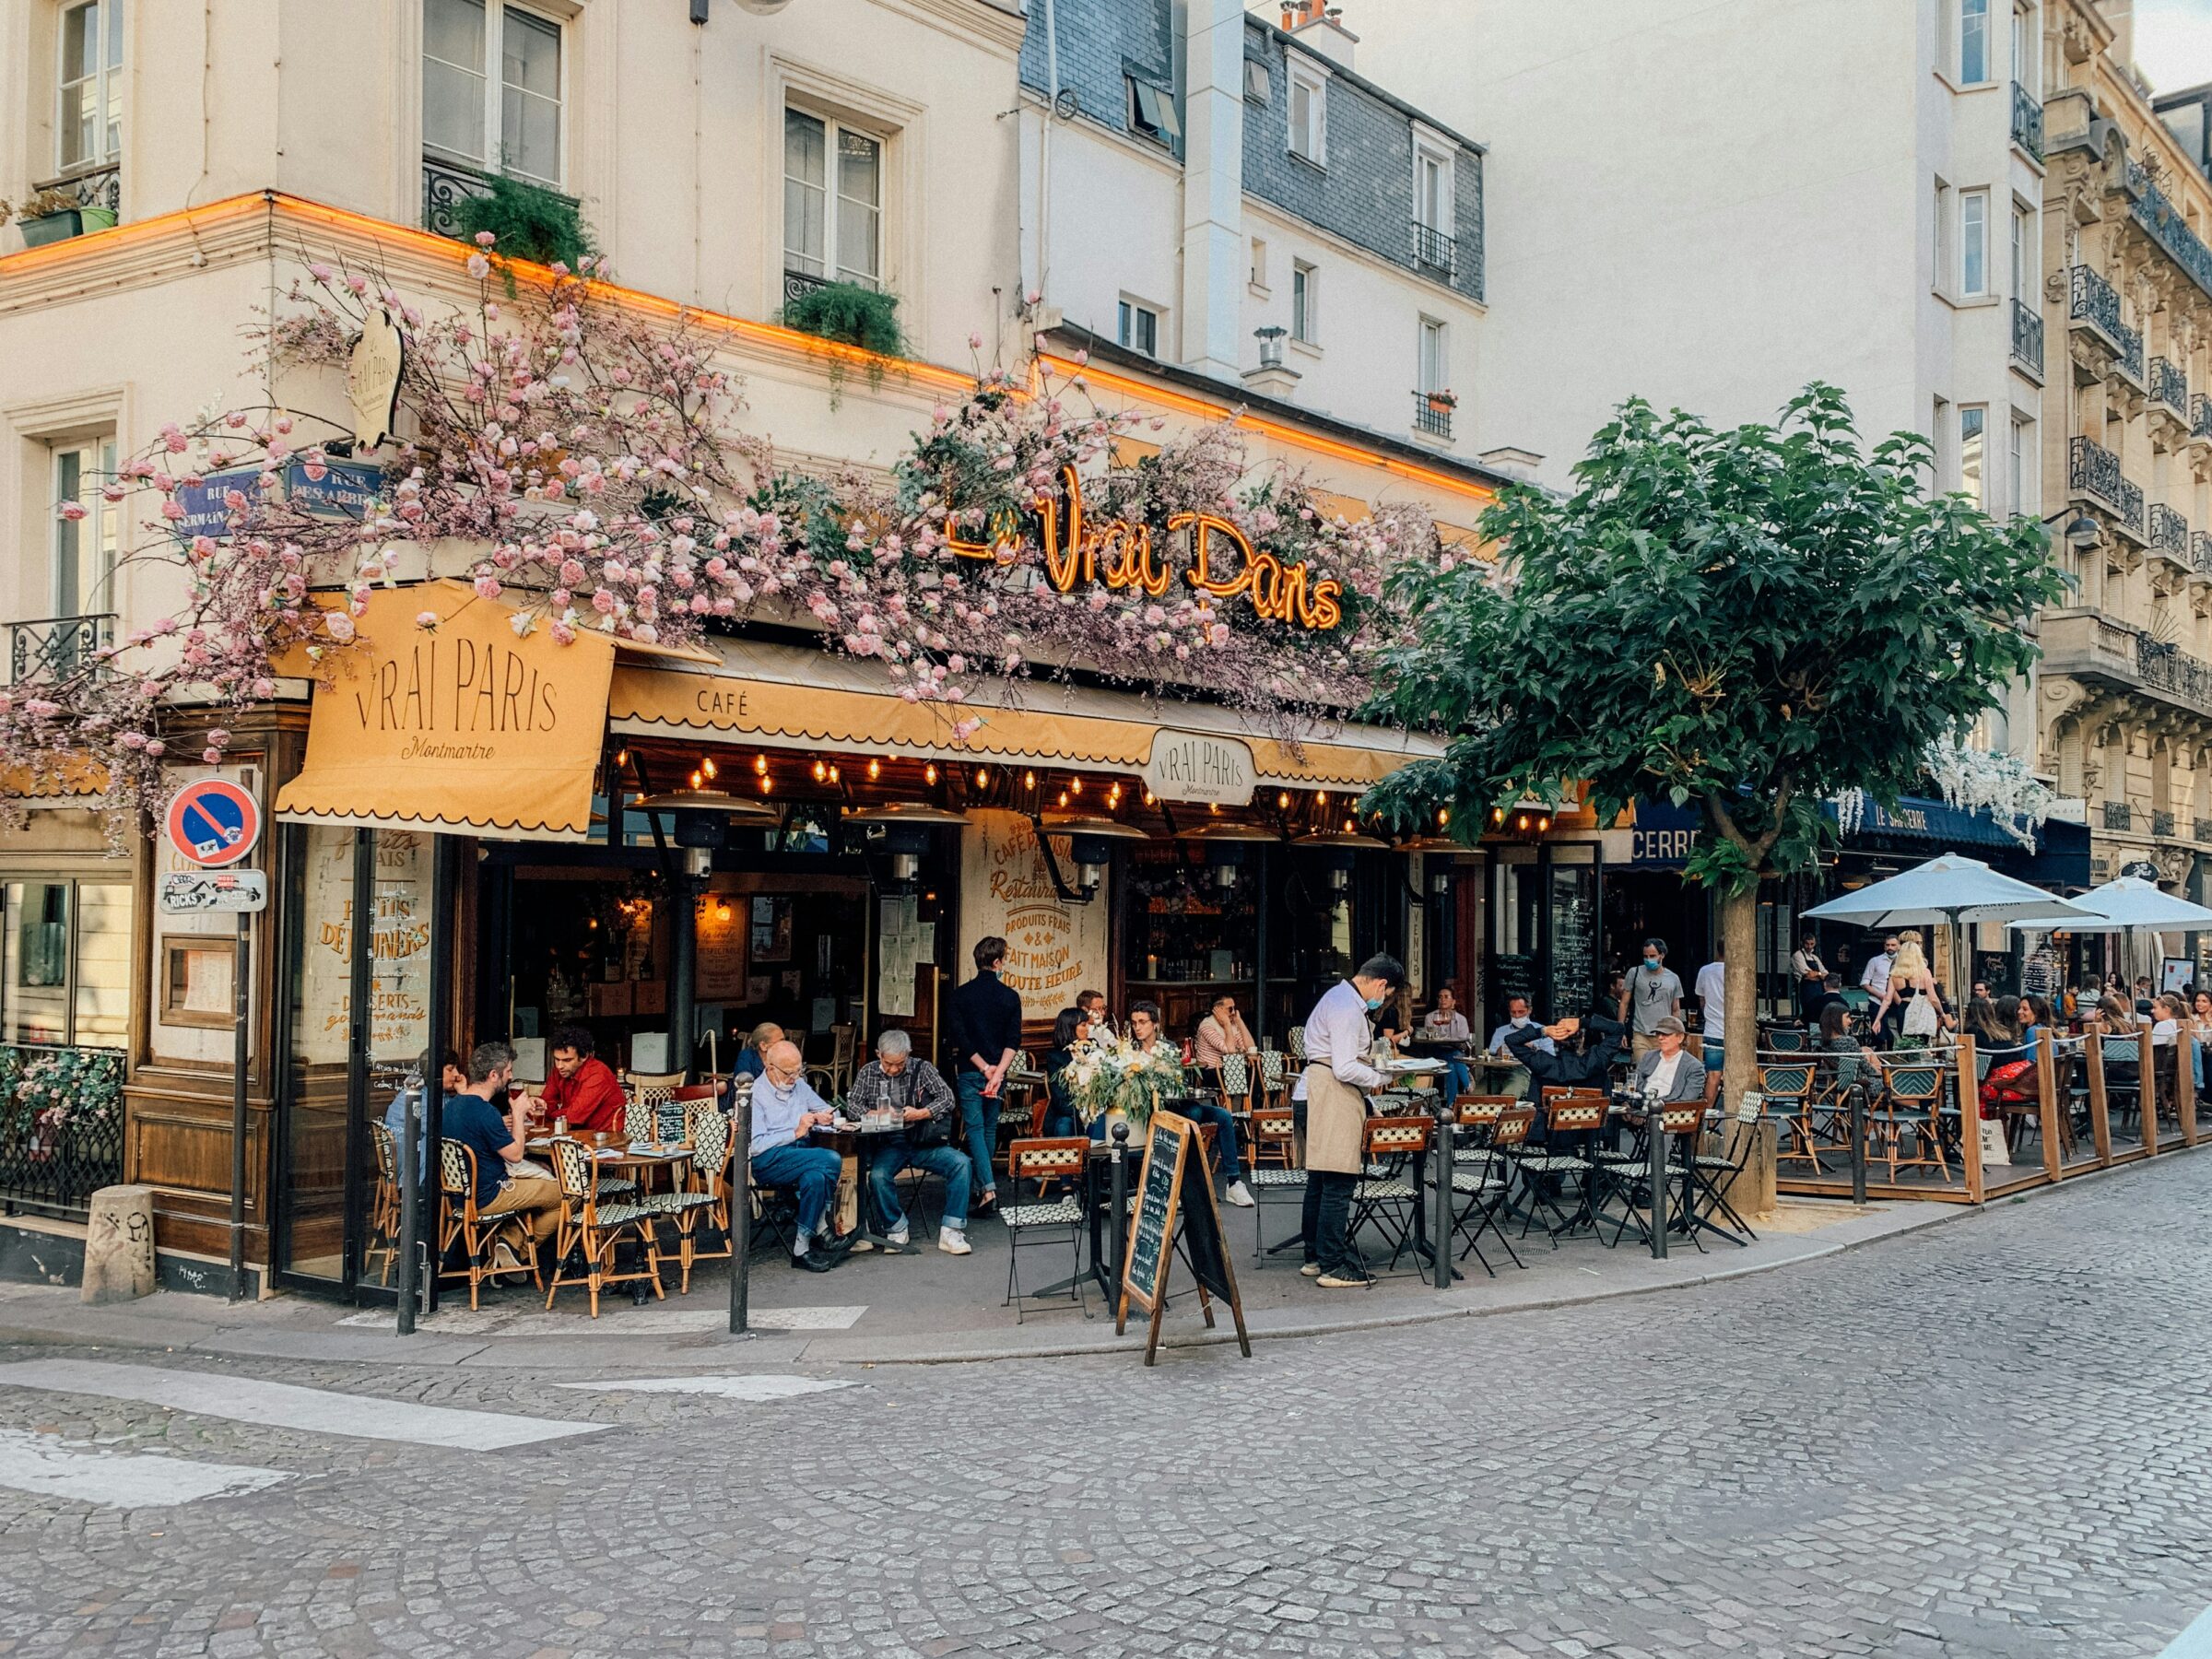 Paris Cafe street scene.